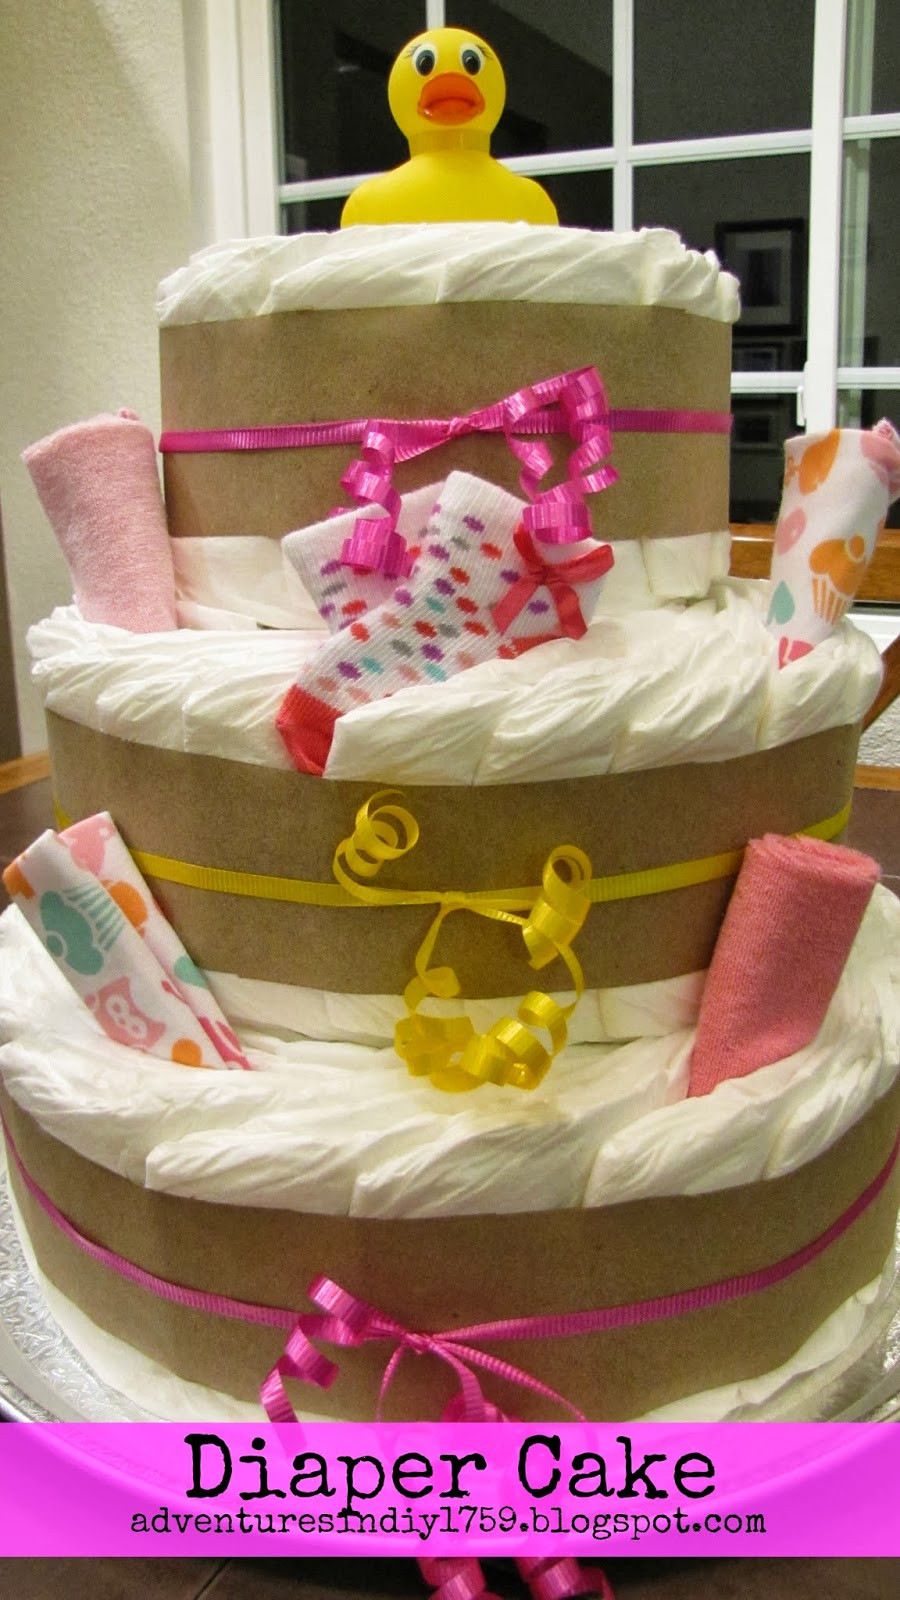 DIY Baby Shower Diaper Cakes
 Adventures in DIY Baby Shower Diaper Cake